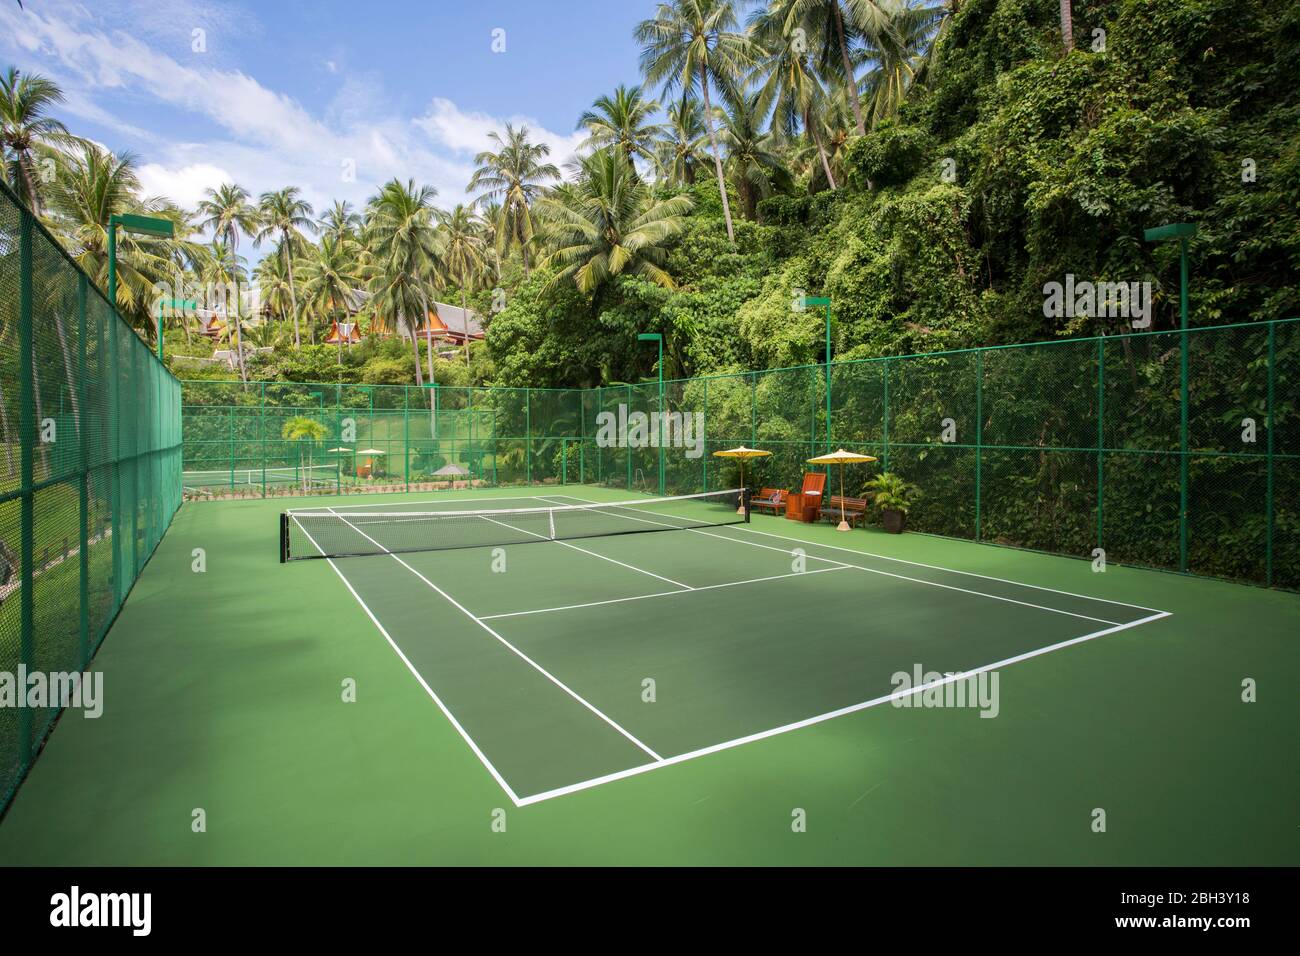 Court de tennis extérieur à l'Amanpuri situé à Phuket, Thaïlande. Banque D'Images